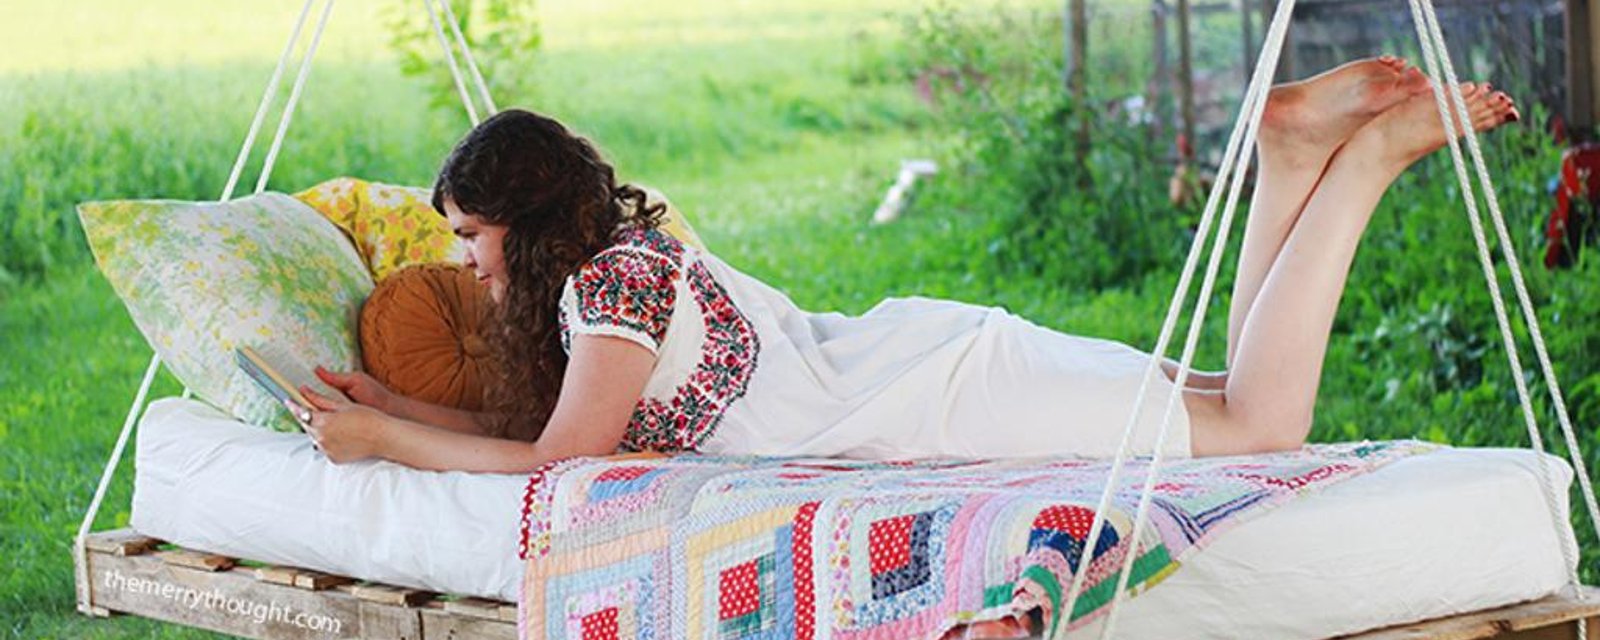 Le must de l'été: un lit-balançoire en bois de palettes fait maison